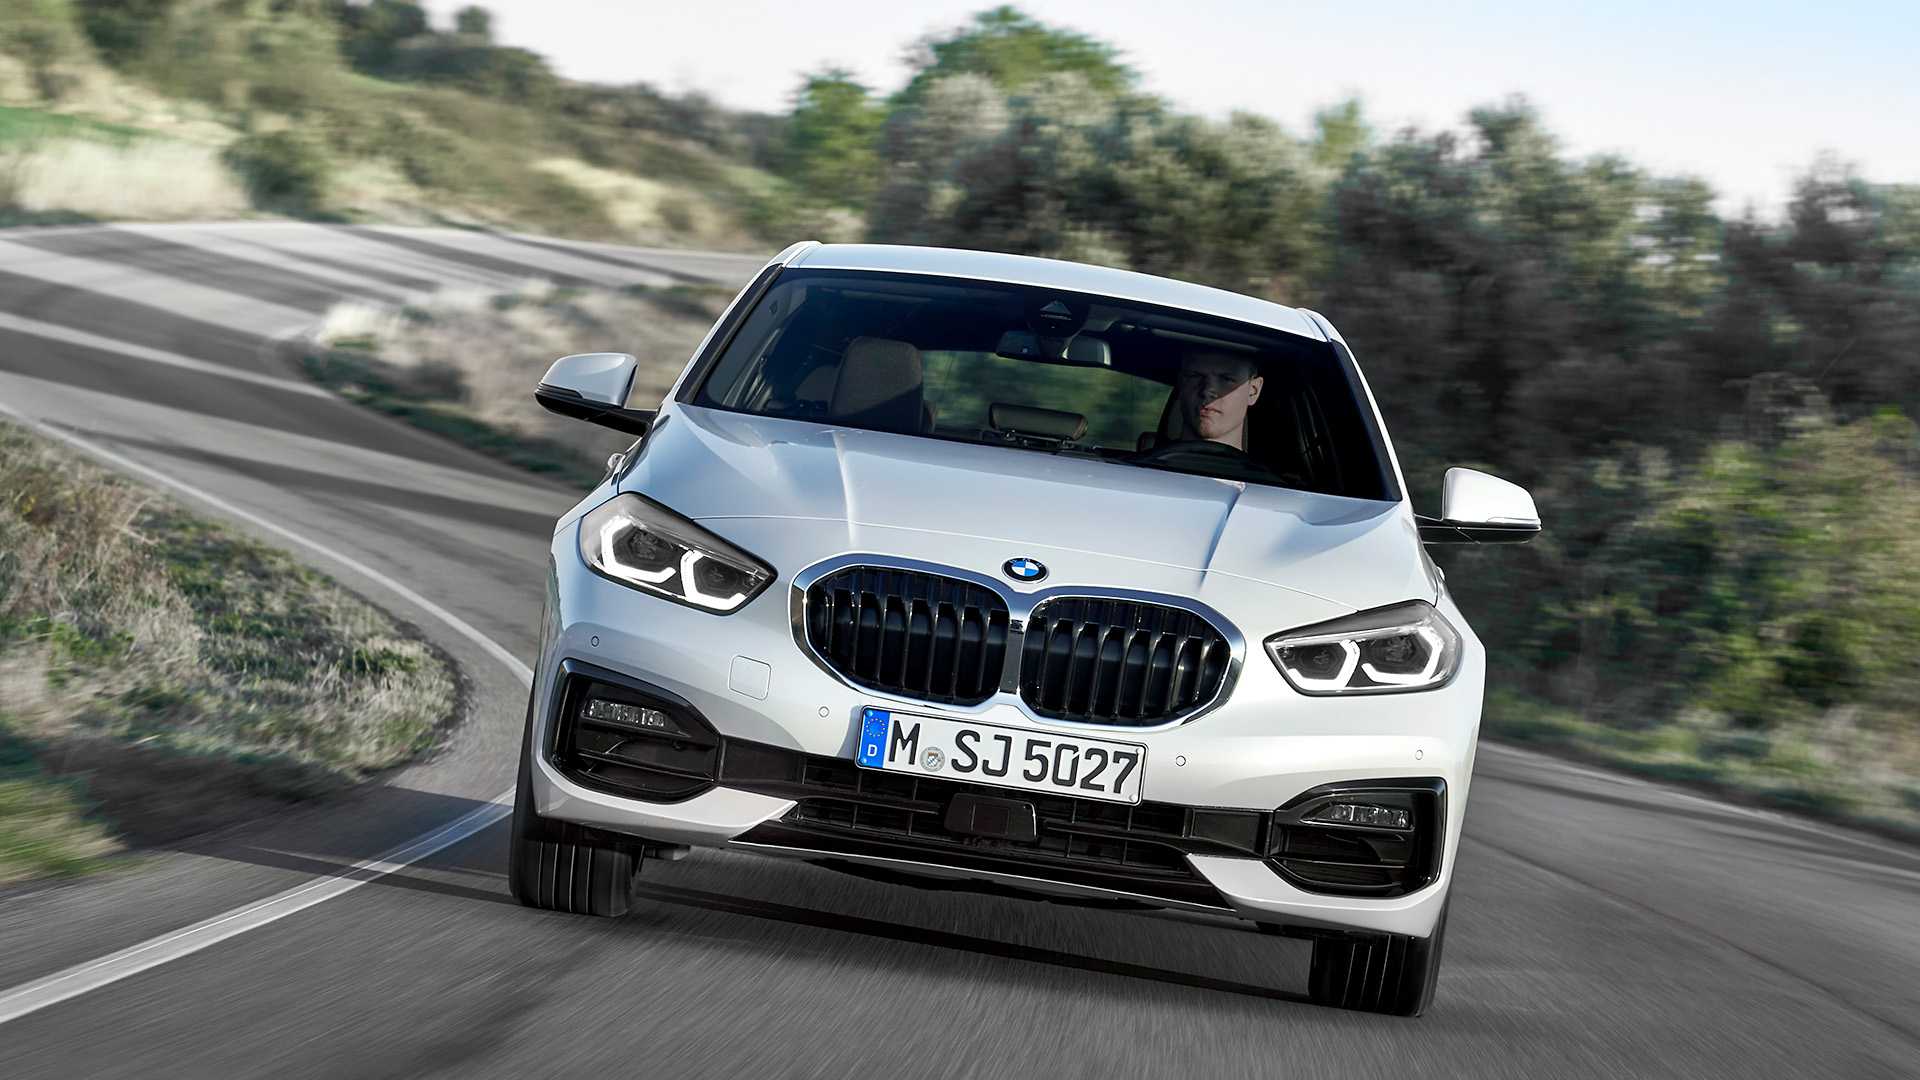 2019 BMW 1 Serisi tanıtıldı: Önden çekişe merhaba